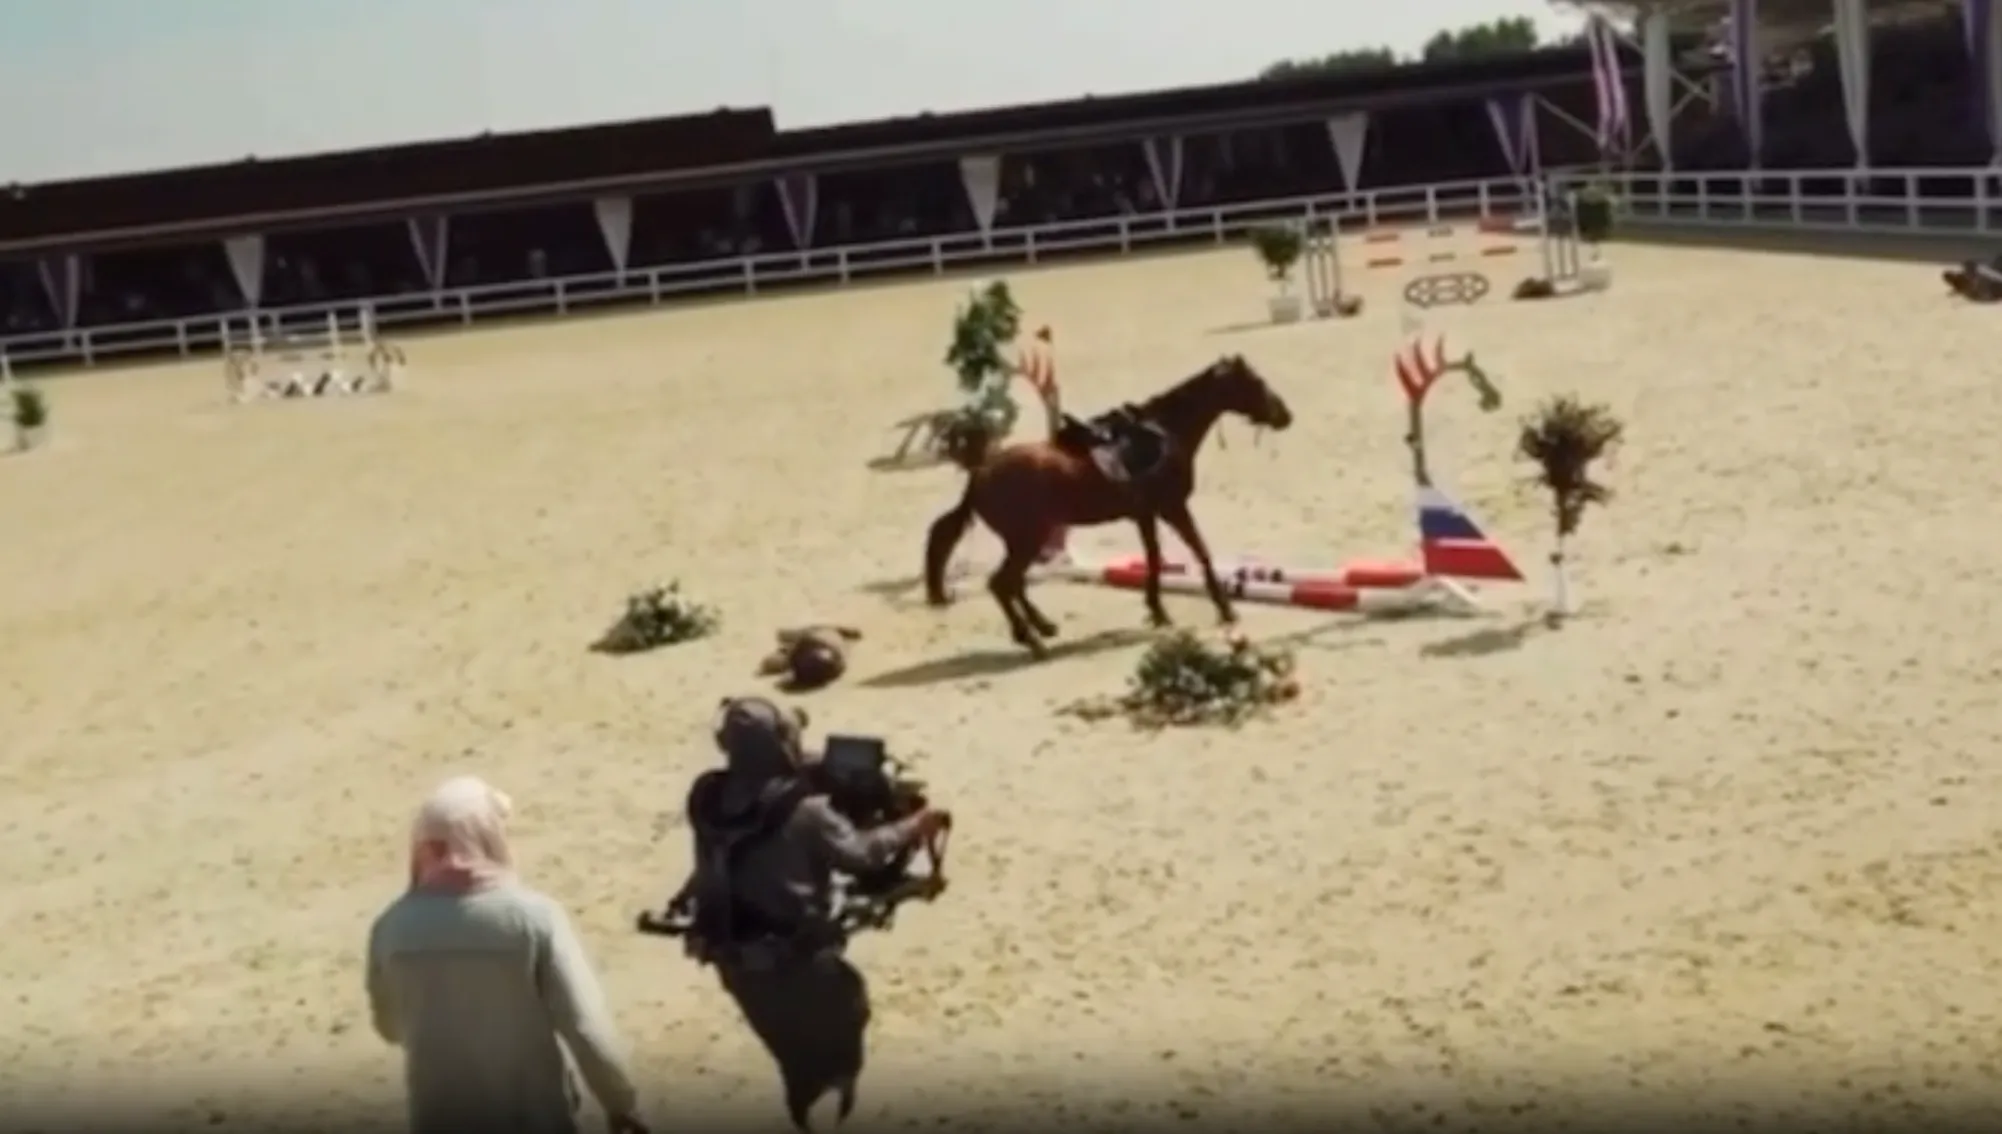 Фильм про лошадей оказался в центре скандала из-за жестокого обращения с животными